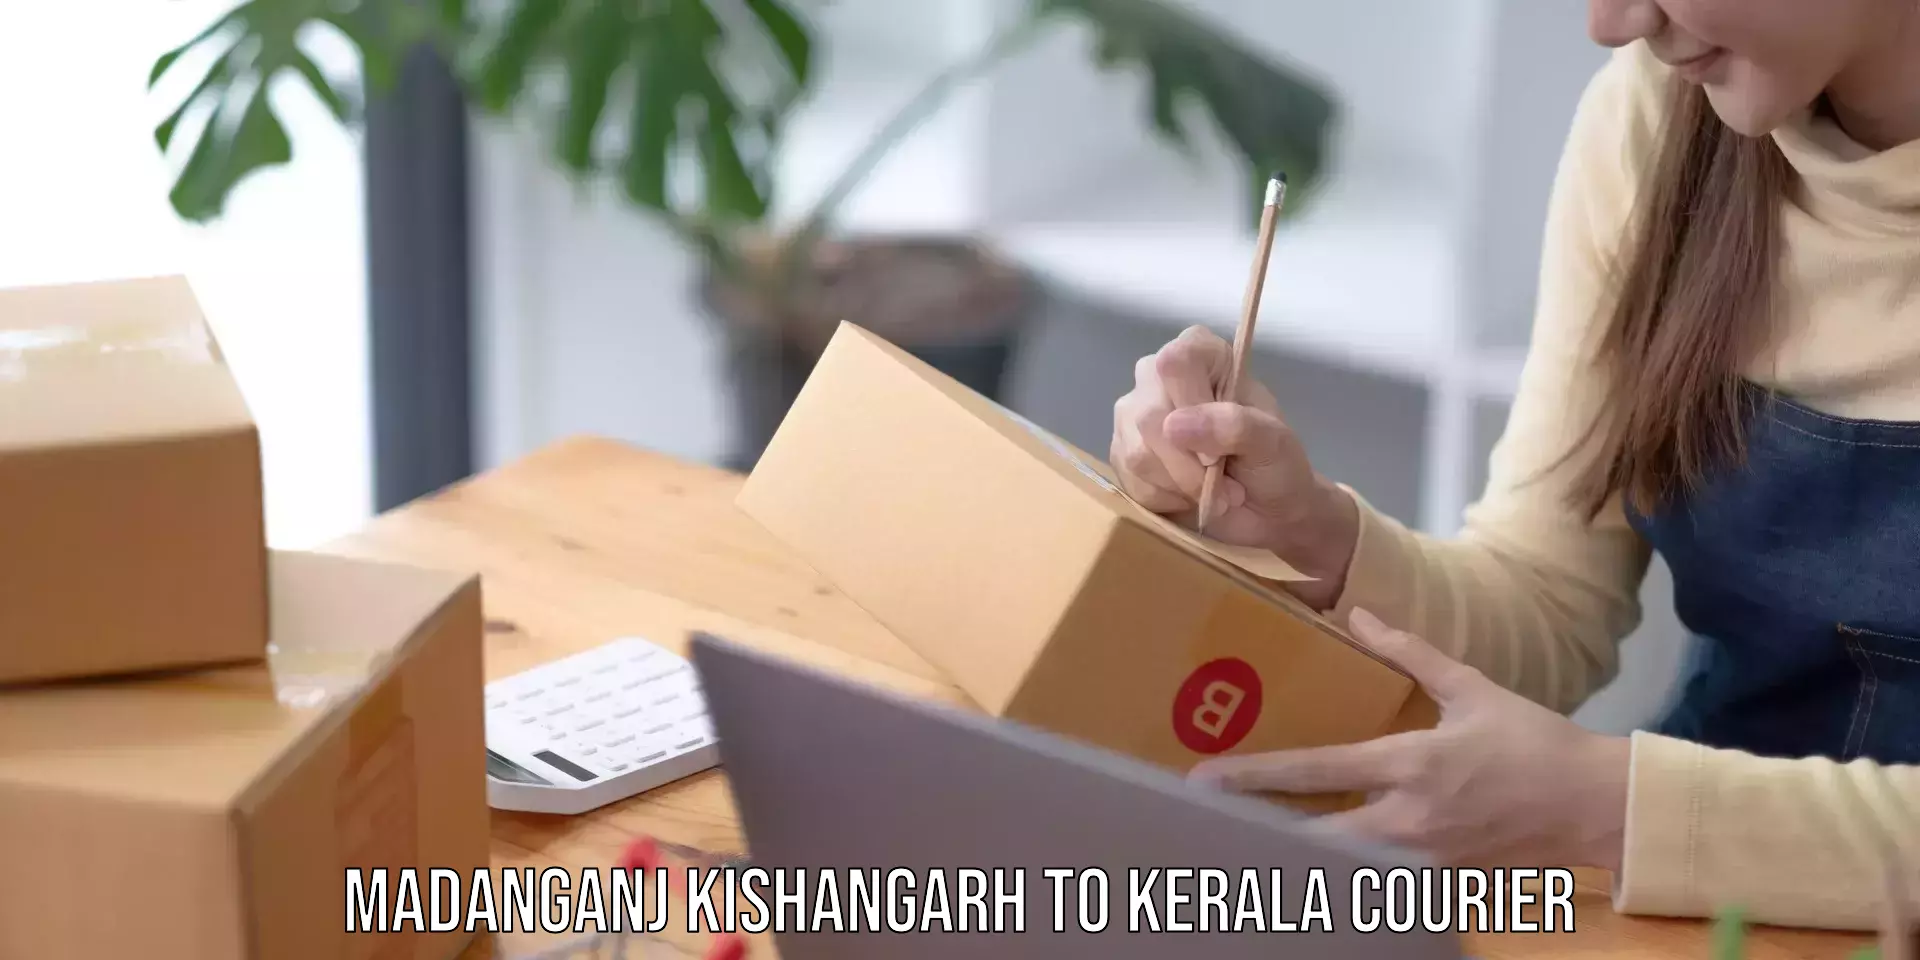 Digital courier platforms Madanganj Kishangarh to Kakkayam